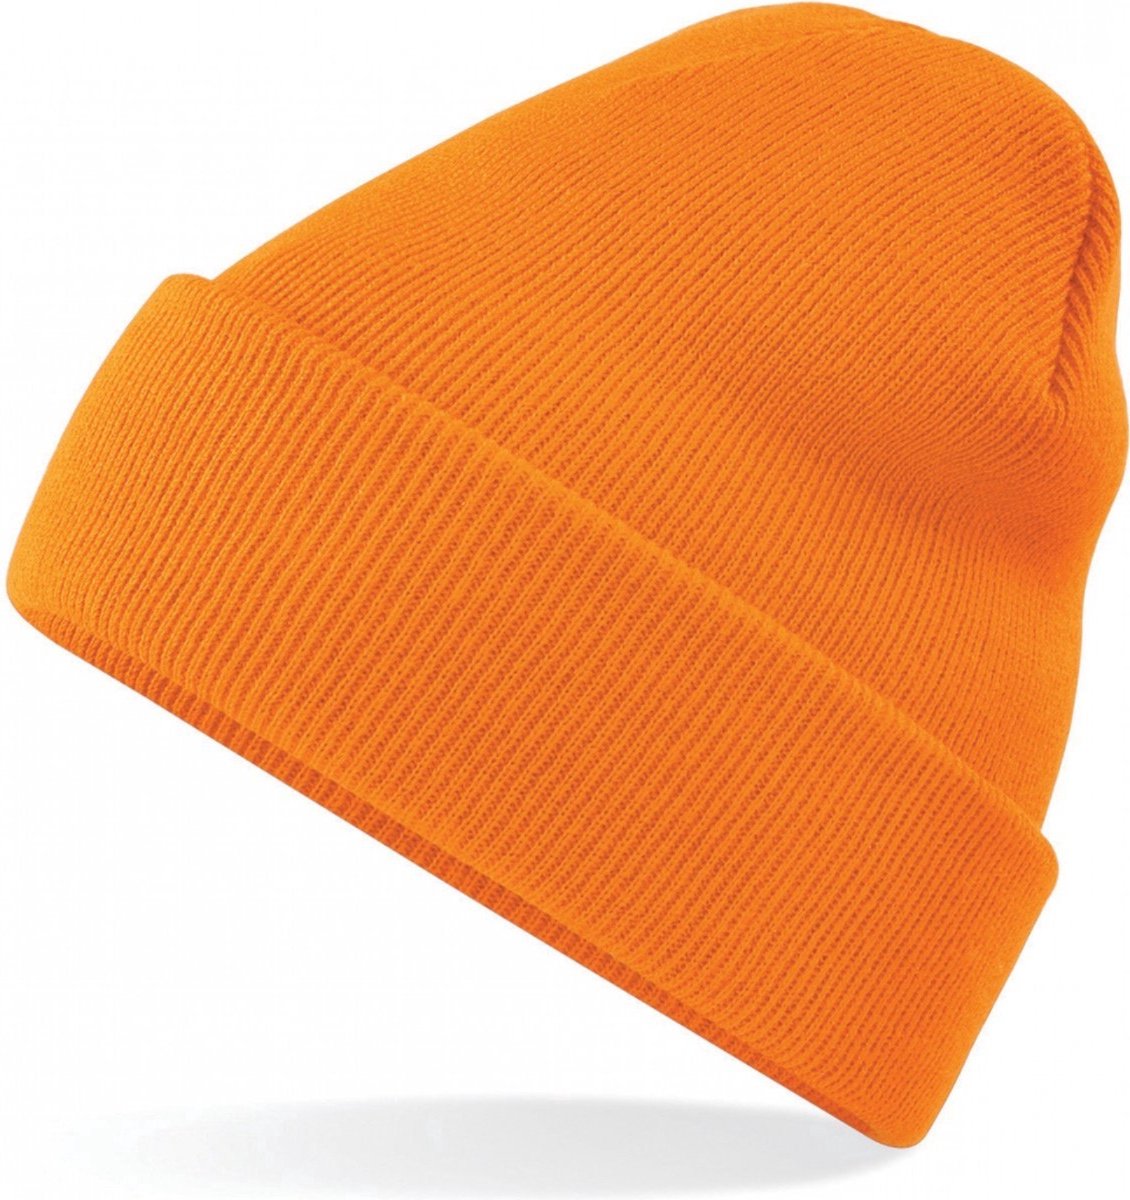 CHPN - Beanie - Muts - Gehaakte - Hippe muts - Wintermuts - Winter accessoire - Koud hoofd - Oranje